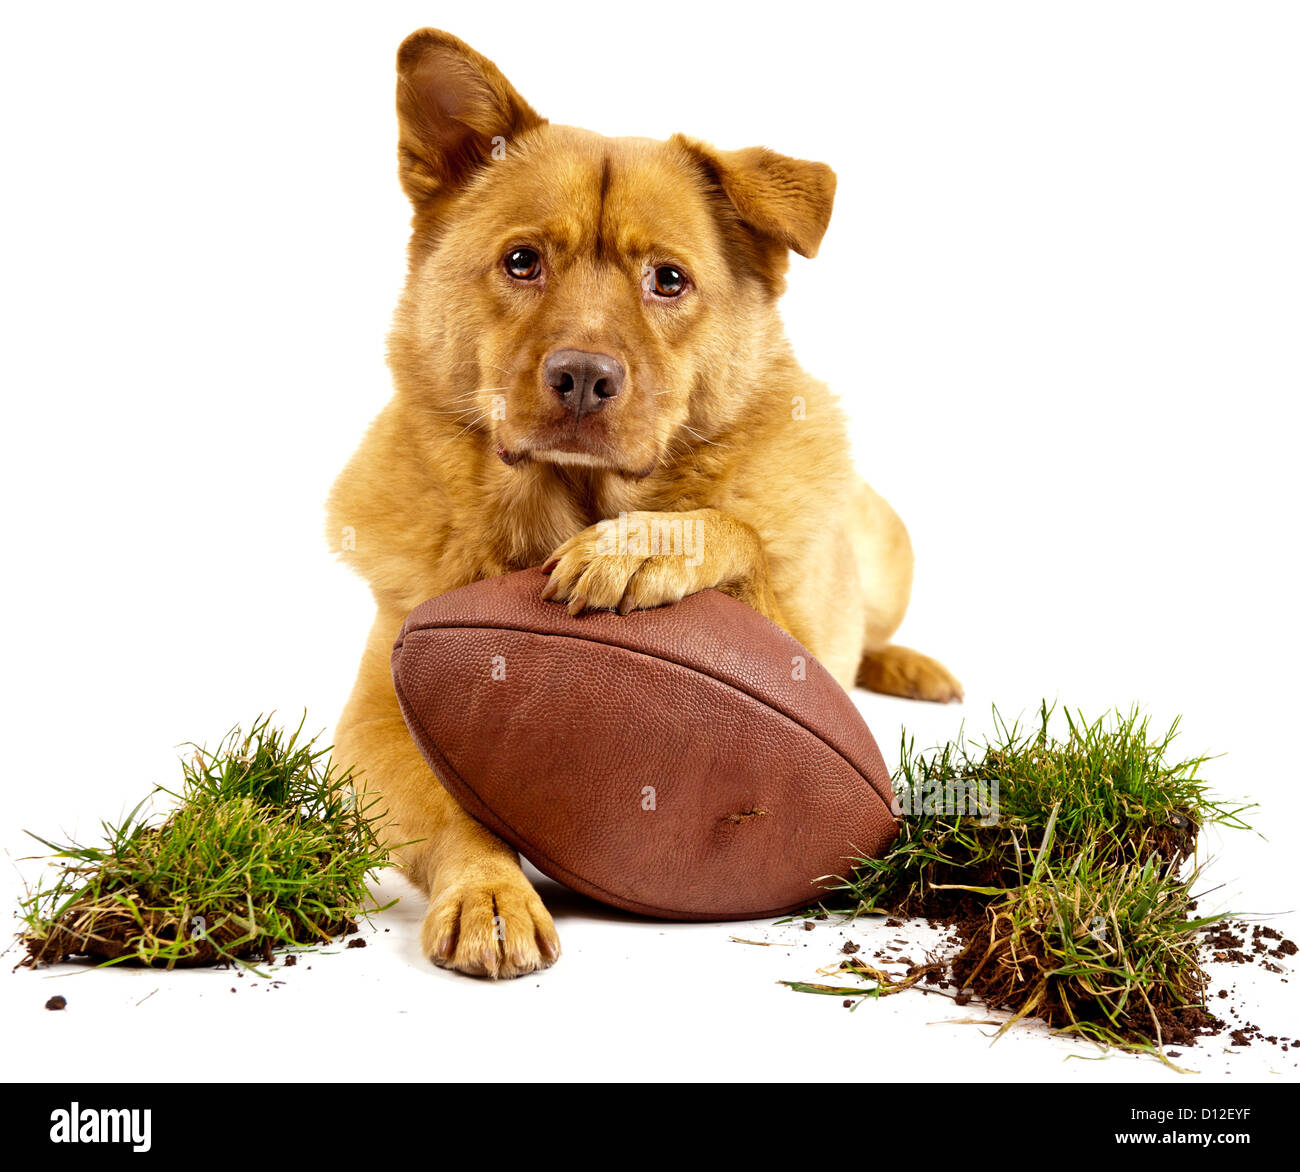 Perro posando con el fútbol y césped de hierba. Aislado en blanco Foto de stock